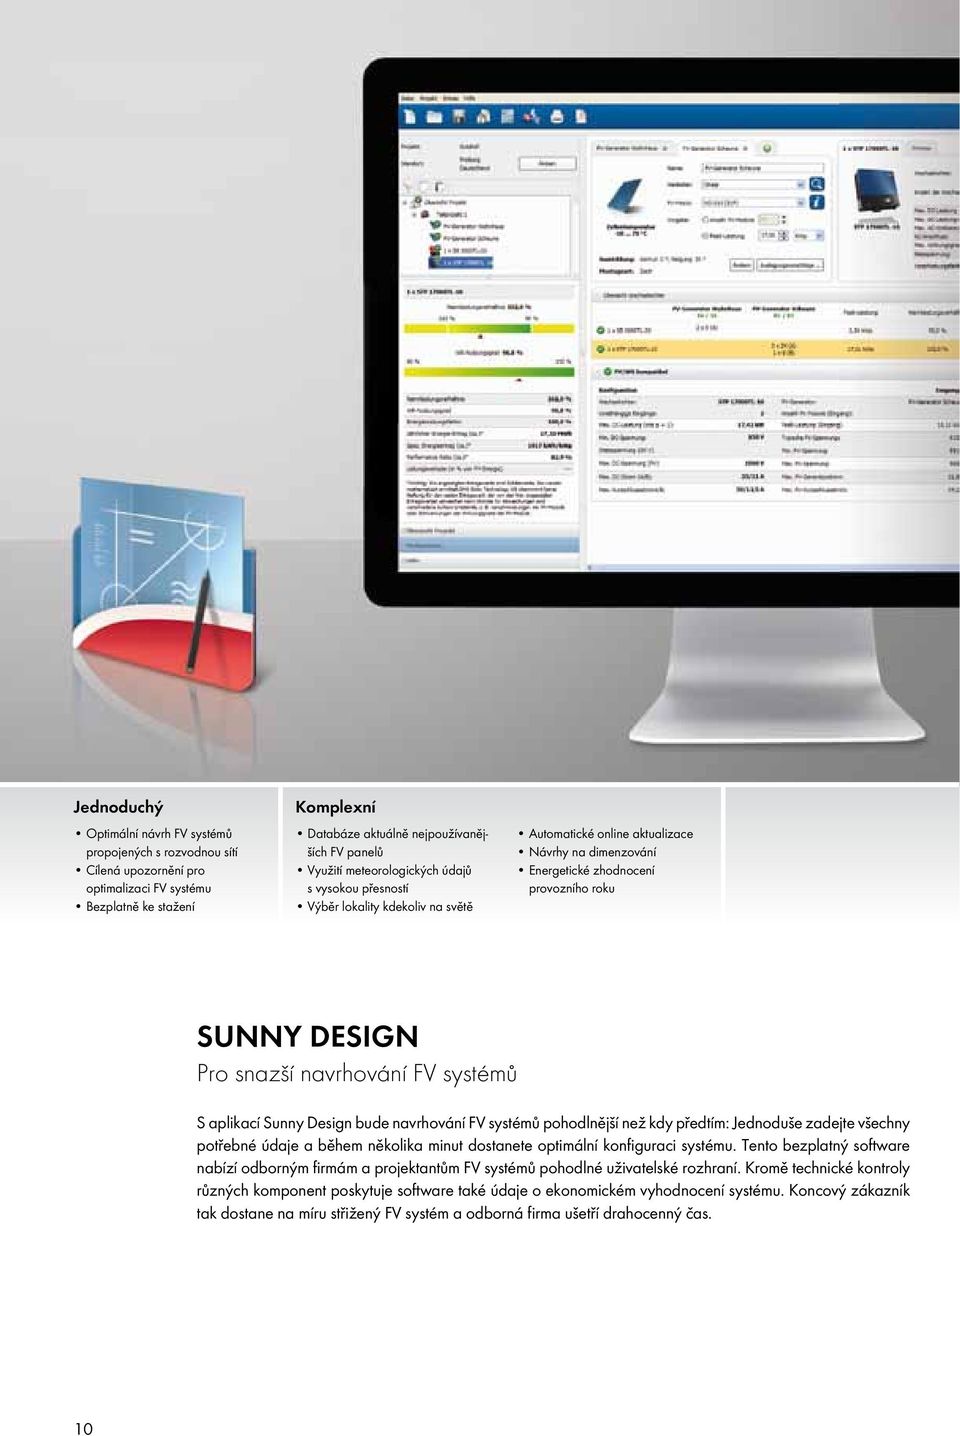 navrhování FV systémů S aplikací Sunny Design bude navrhování FV systémů pohodlnější než kdy předtím: Jednoduše zadejte všechny potřebné údaje a během několika minut dostanete optimální konfiguraci